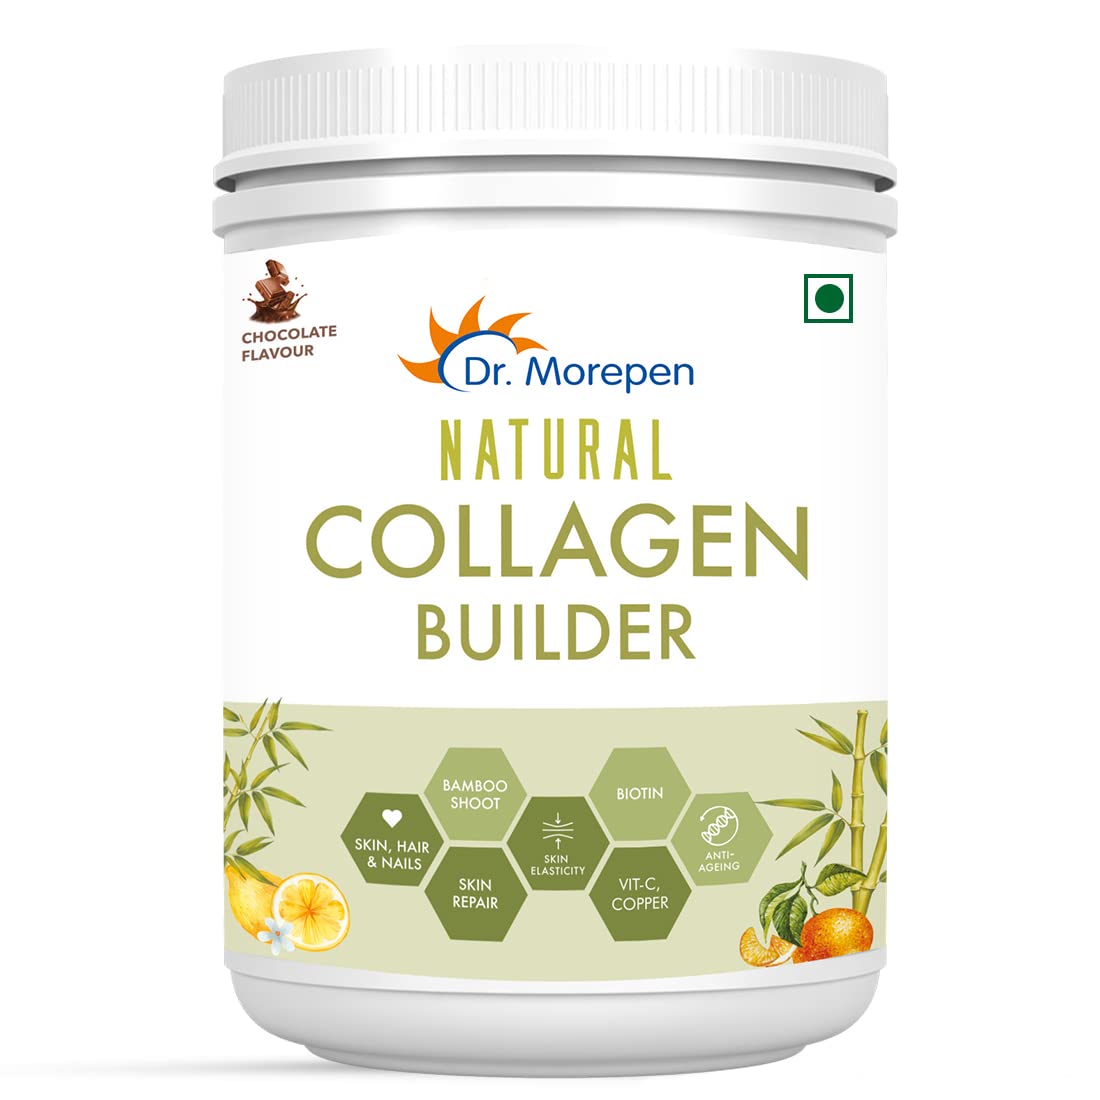 Dr Morepen Natural Collagen Builder Image